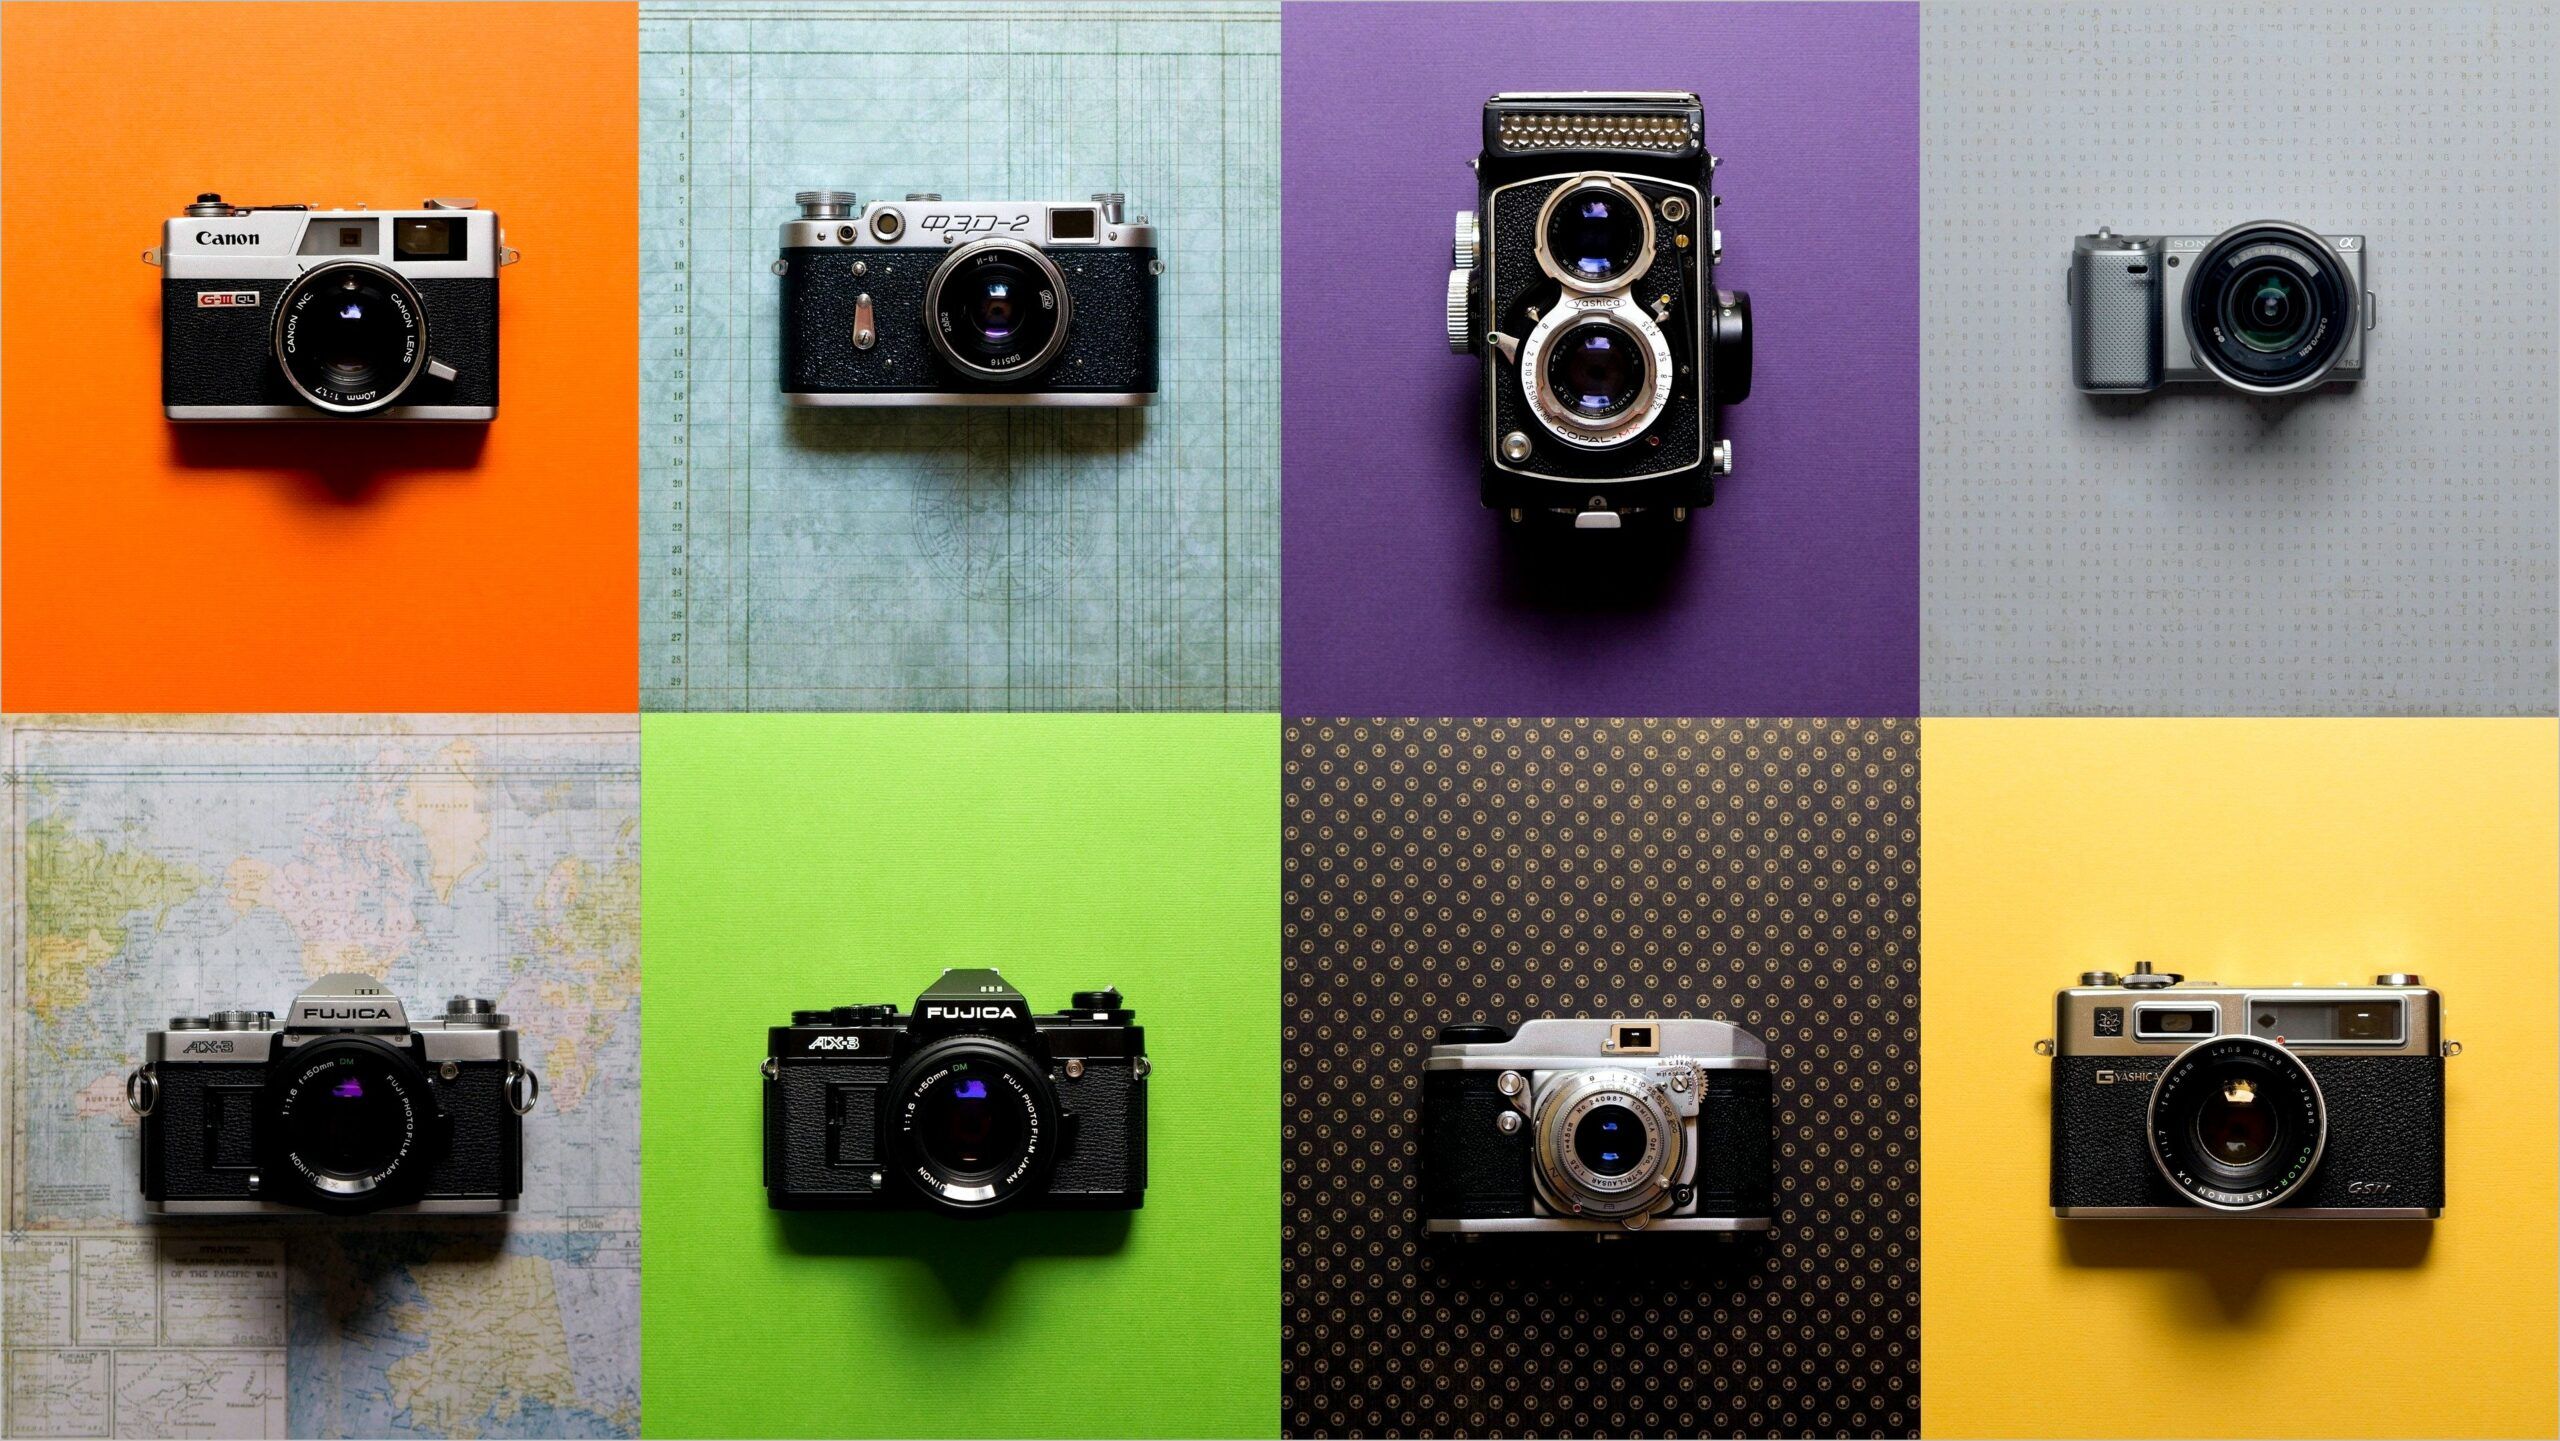 Fuji 4k Camera Wallpaper. Camera wallpaper, Classic camera, Vintage cameras